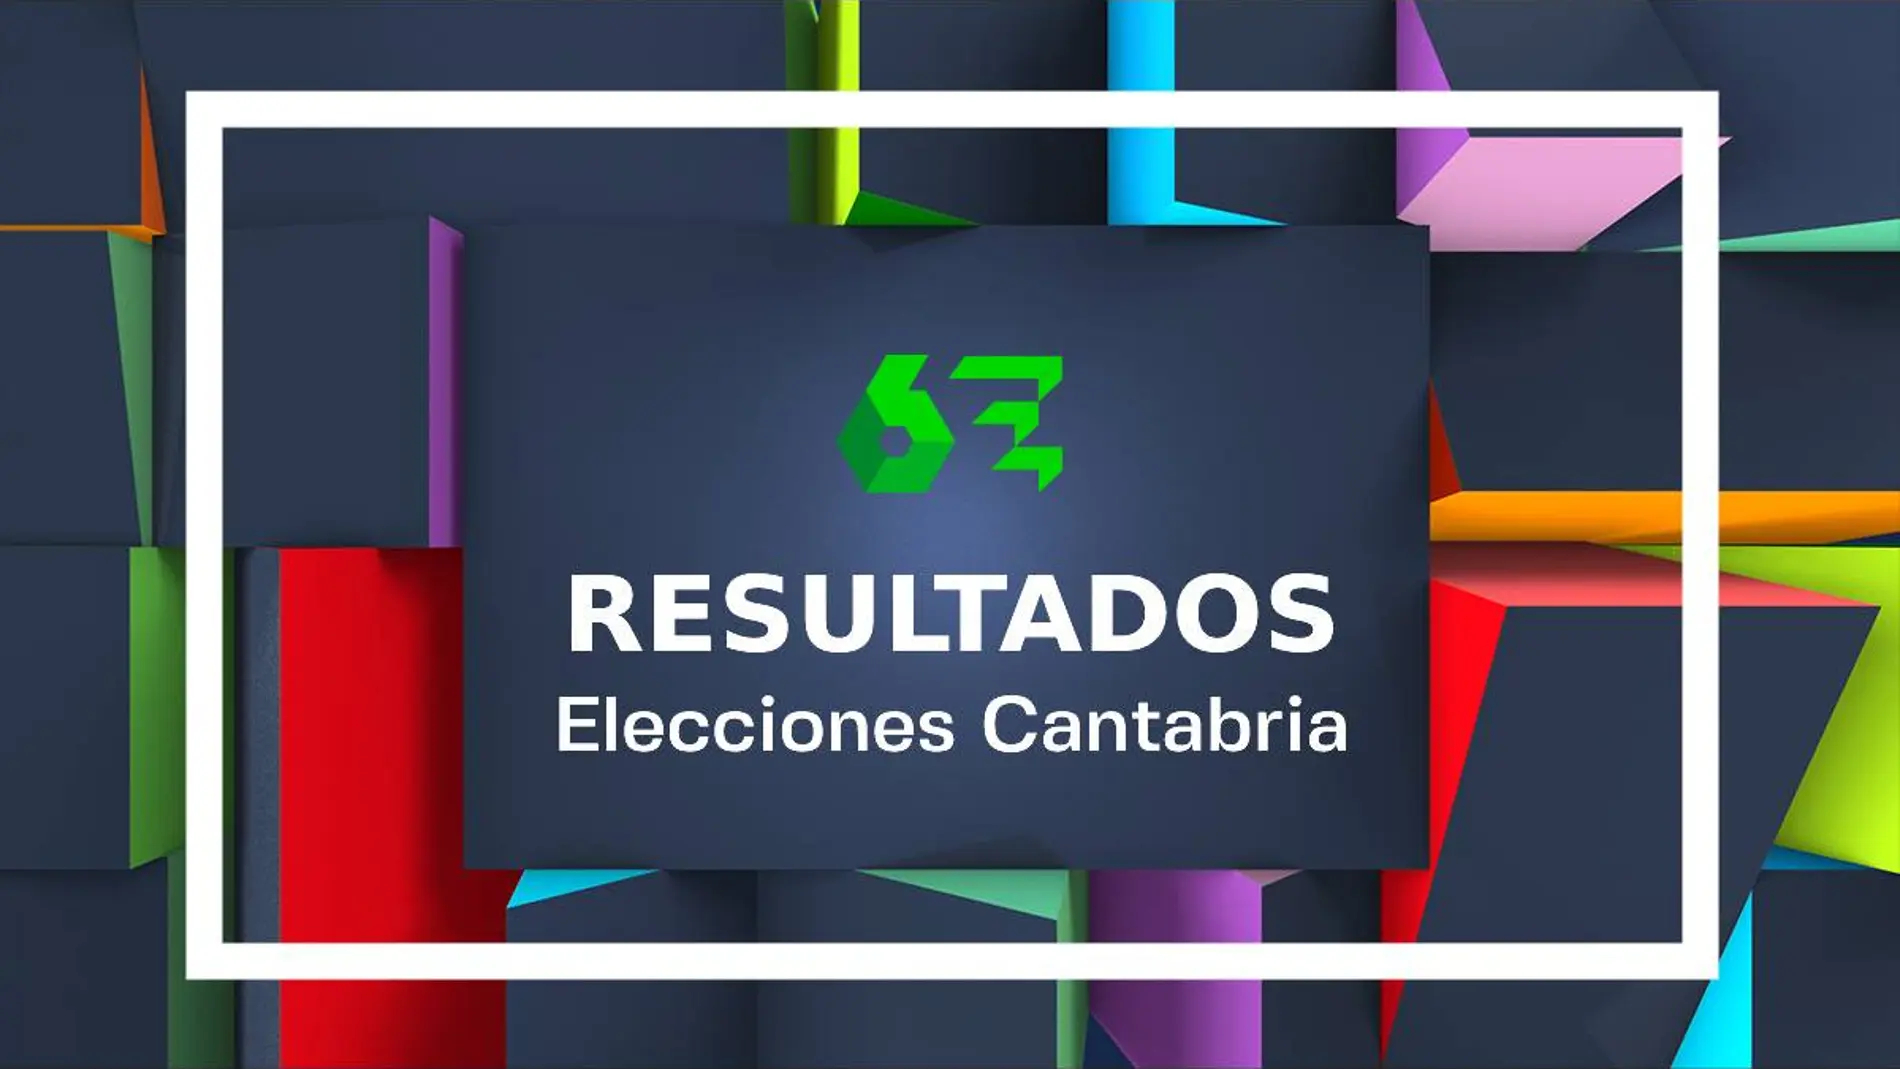 Elecciones autonómicas (28M) en la comunidad de Cantabria: consulta los resultados